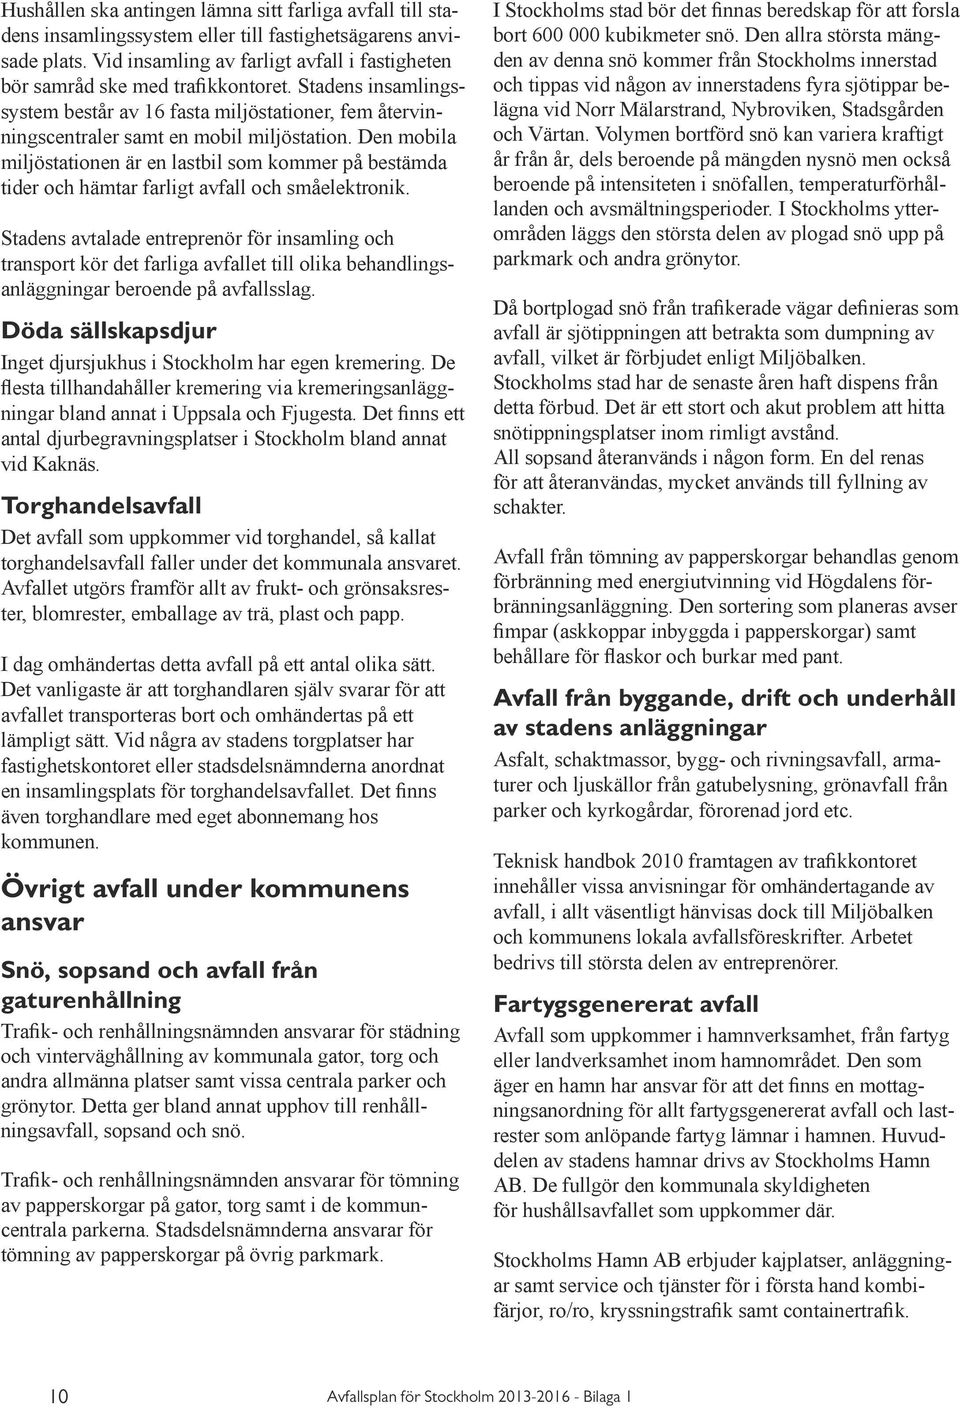 Bilagor till Avfallsplan för stockholm - PDF Gratis nedladdning